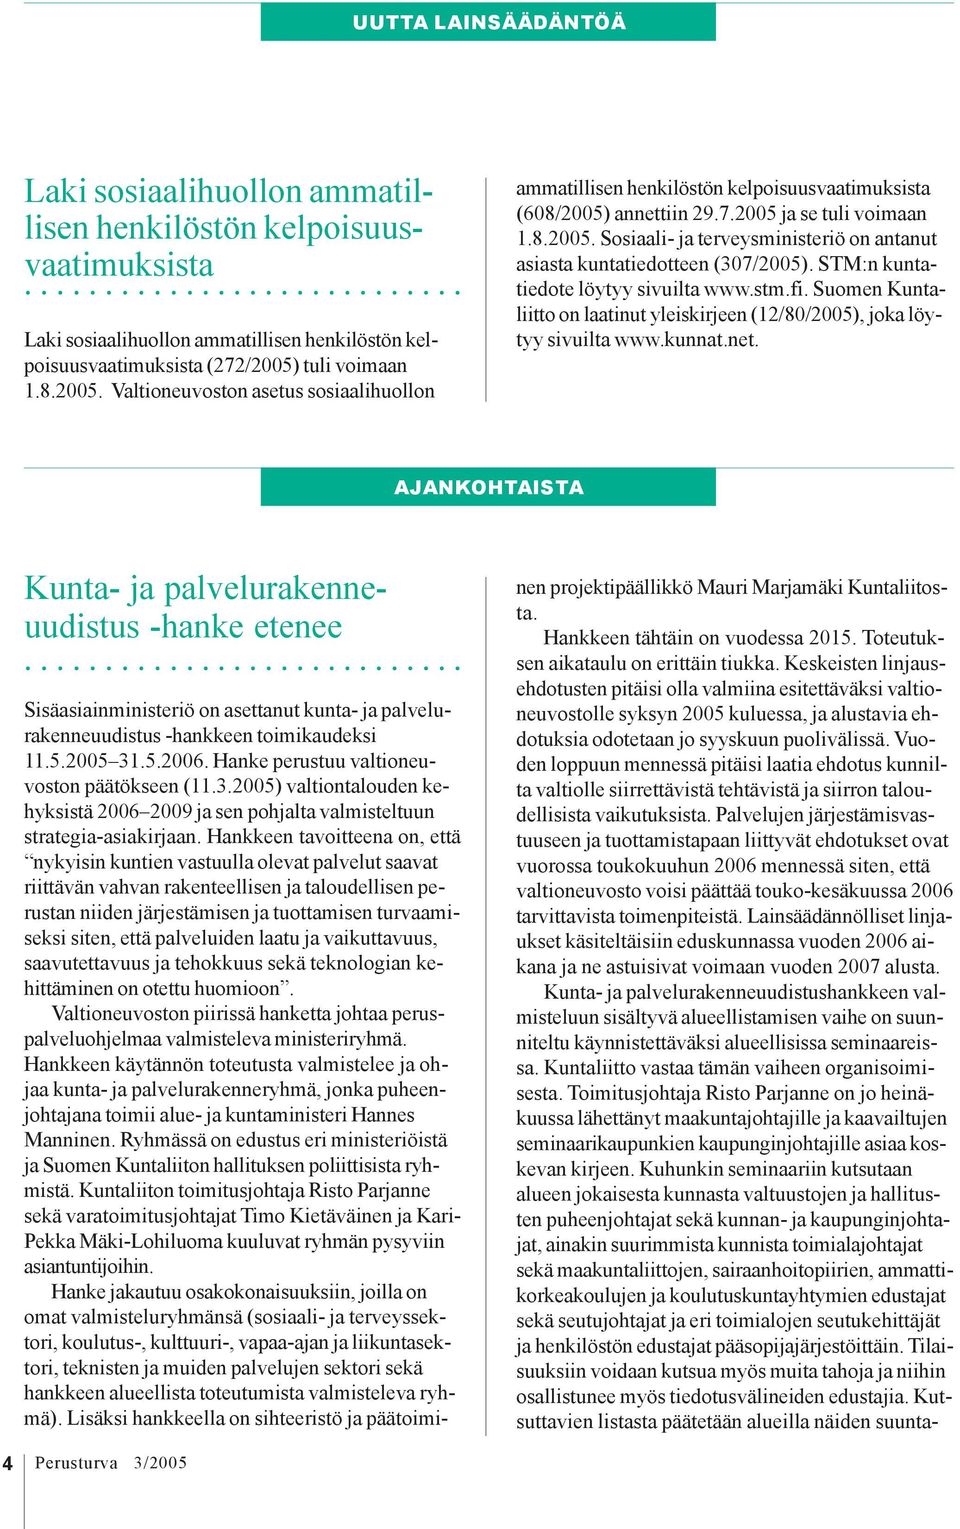 STM:n kuntatiedote löytyy sivuilta www.stm.fi. Suomen Kuntaliitto on laatinut yleiskirjeen (12/80/2005), joka löytyy sivuilta www.kunnat.net.